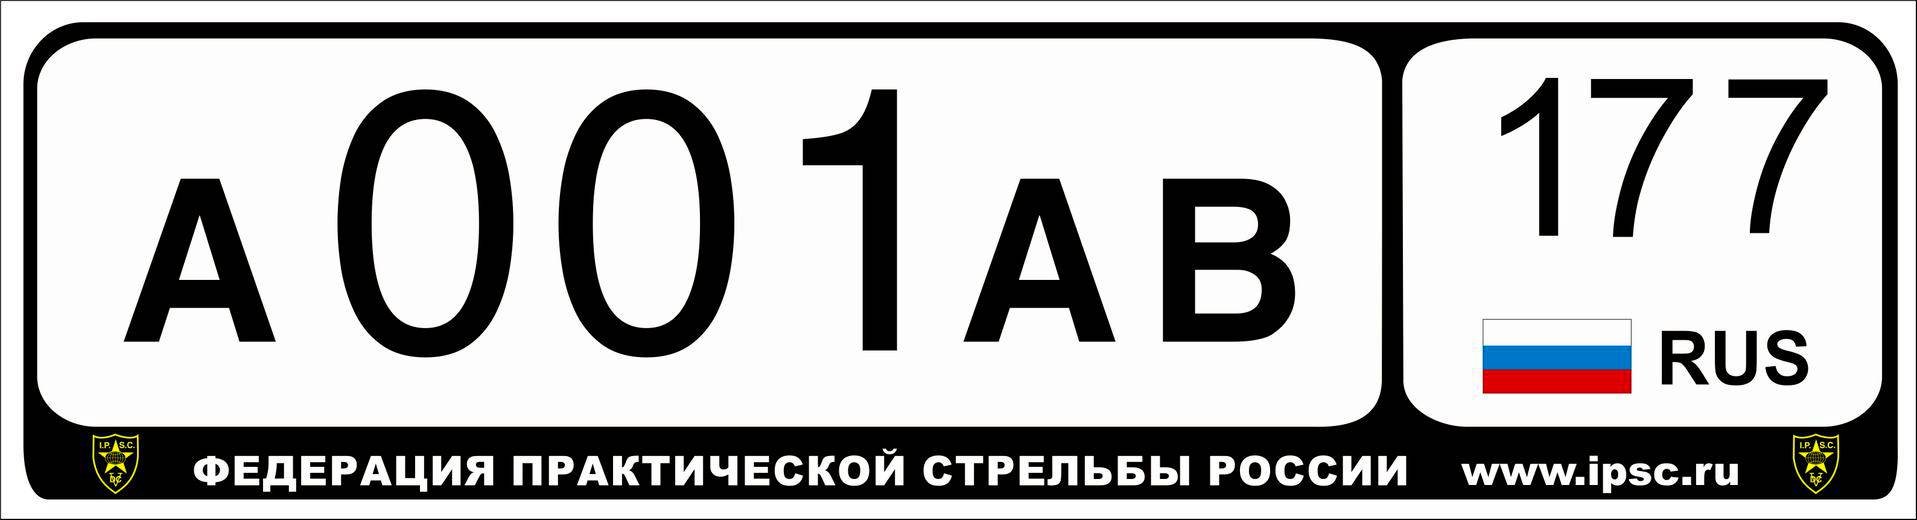 Номера пососи. Номерной знак автомобиля. Макет автомобильного номера. Российские номерные знаки. Табличка автомобильный номер.